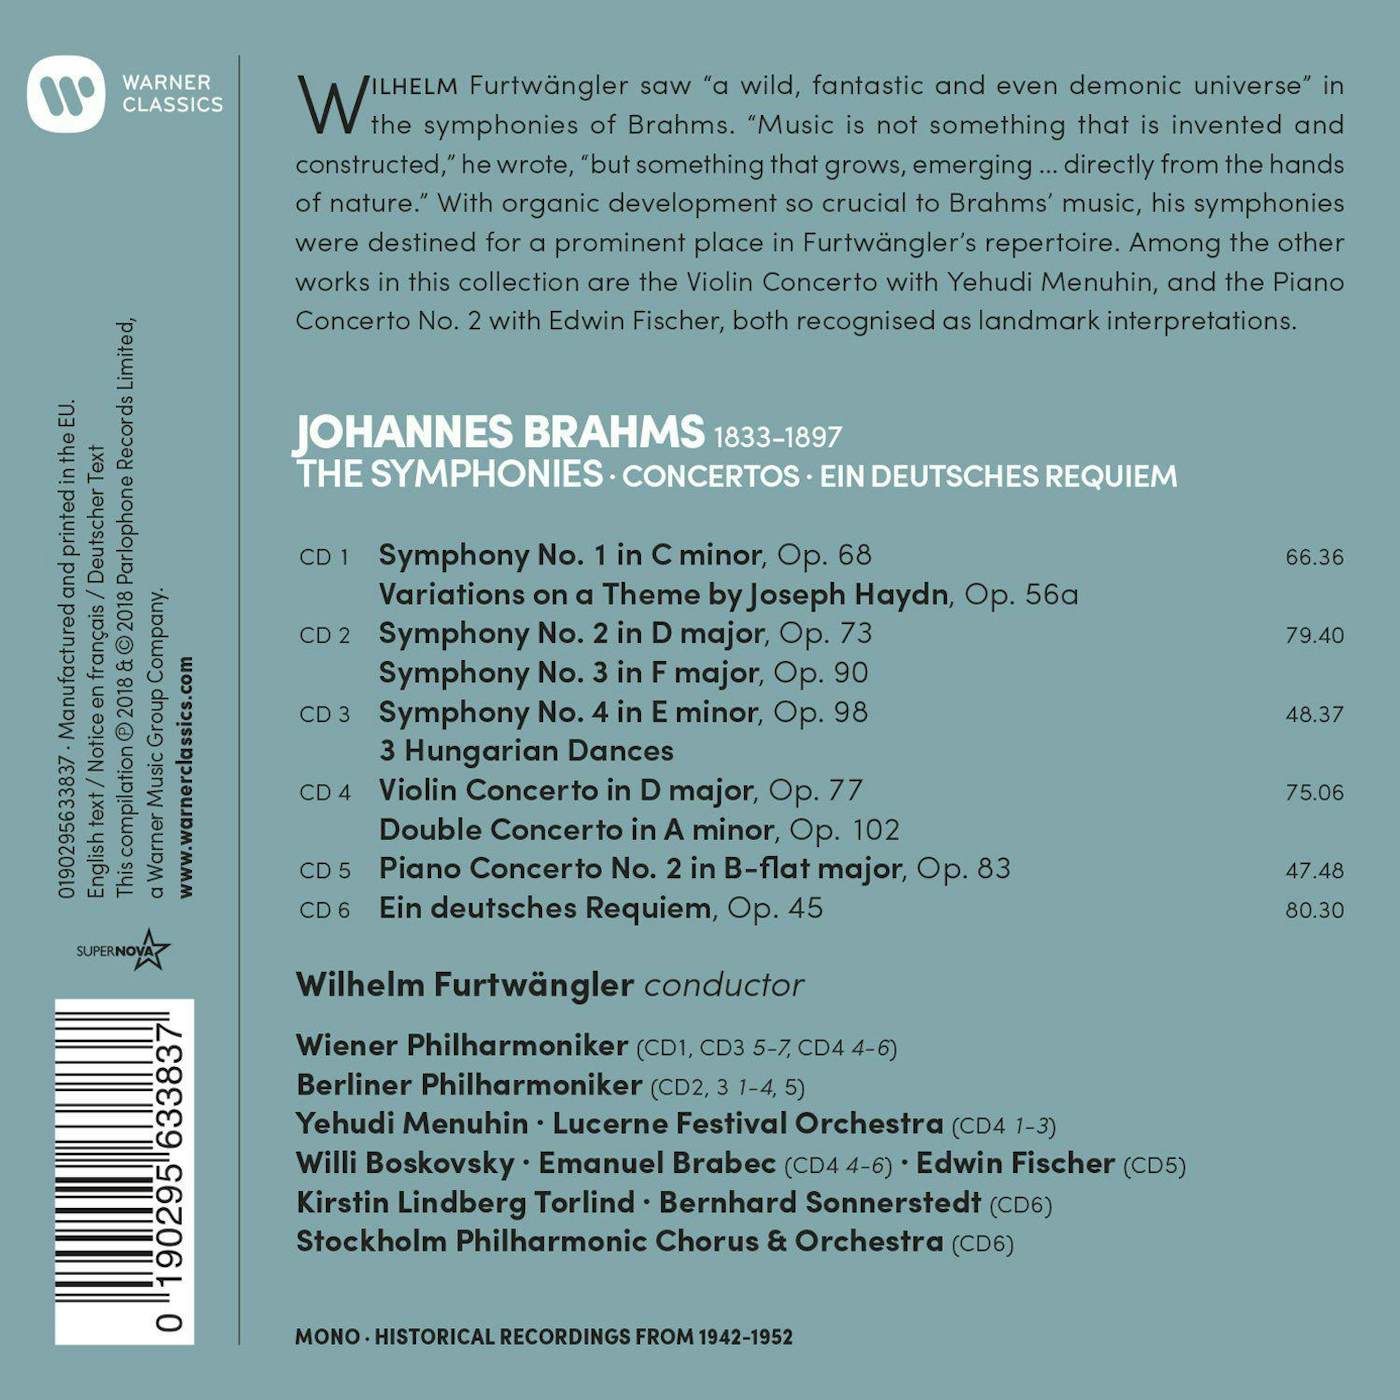 Wilhelm Furtwängler Brahms: The Symphonies, Ein Deutsches Requiem (6CD Box Set)